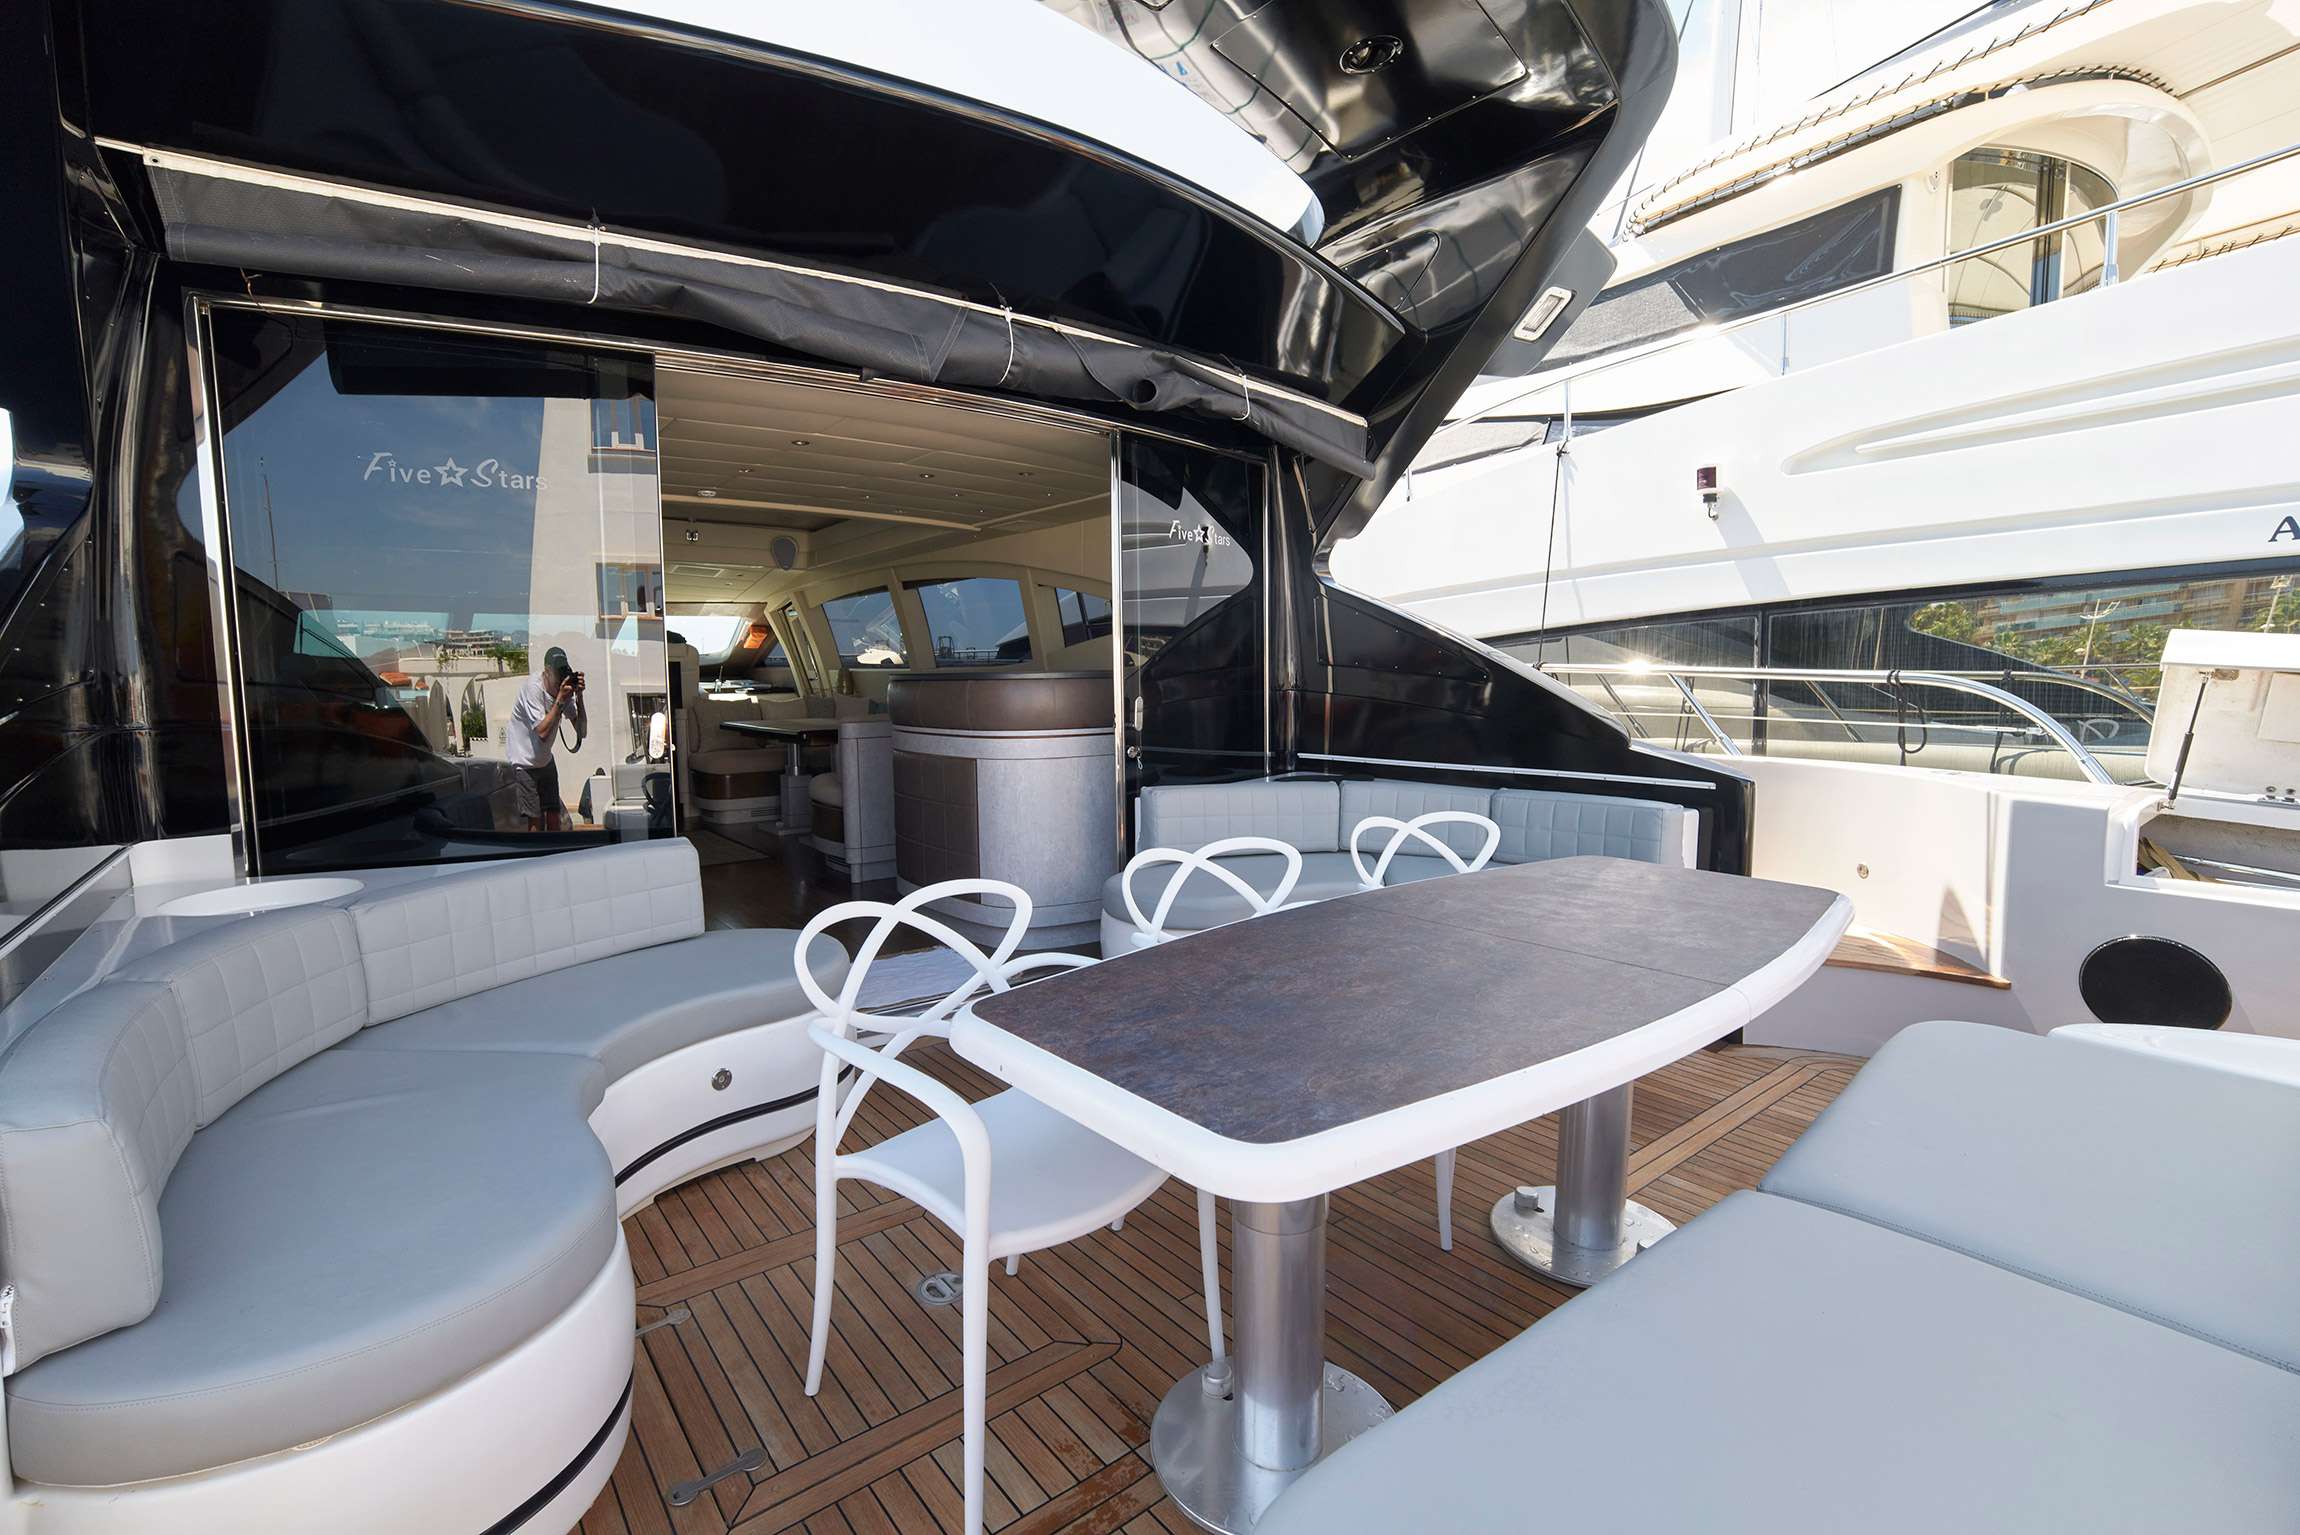 FIVE STARS - Yacht Charter Sant Carles de la Rapita & Boat hire in Balearics & Spain 3